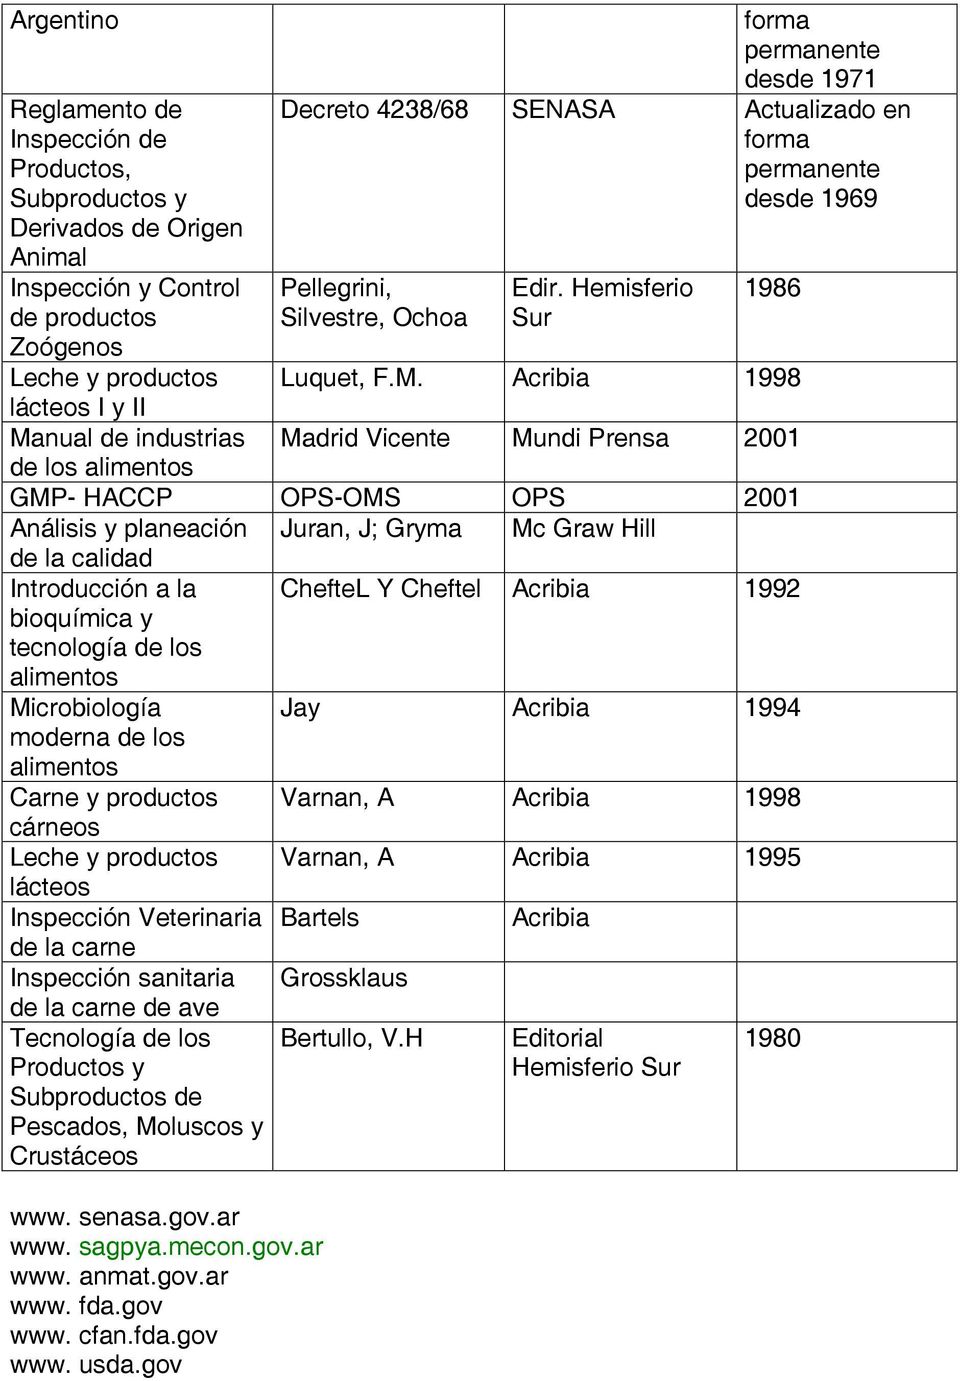 Acribia 1998 Madrid Vicente Mundi Prensa 2001 GMP- HACCP OPS-OMS OPS 2001 Análisis y planeación Juran, J; Gryma Mc Graw Hill de la calidad Introducción a la bioquímica y tecnología de los alimentos